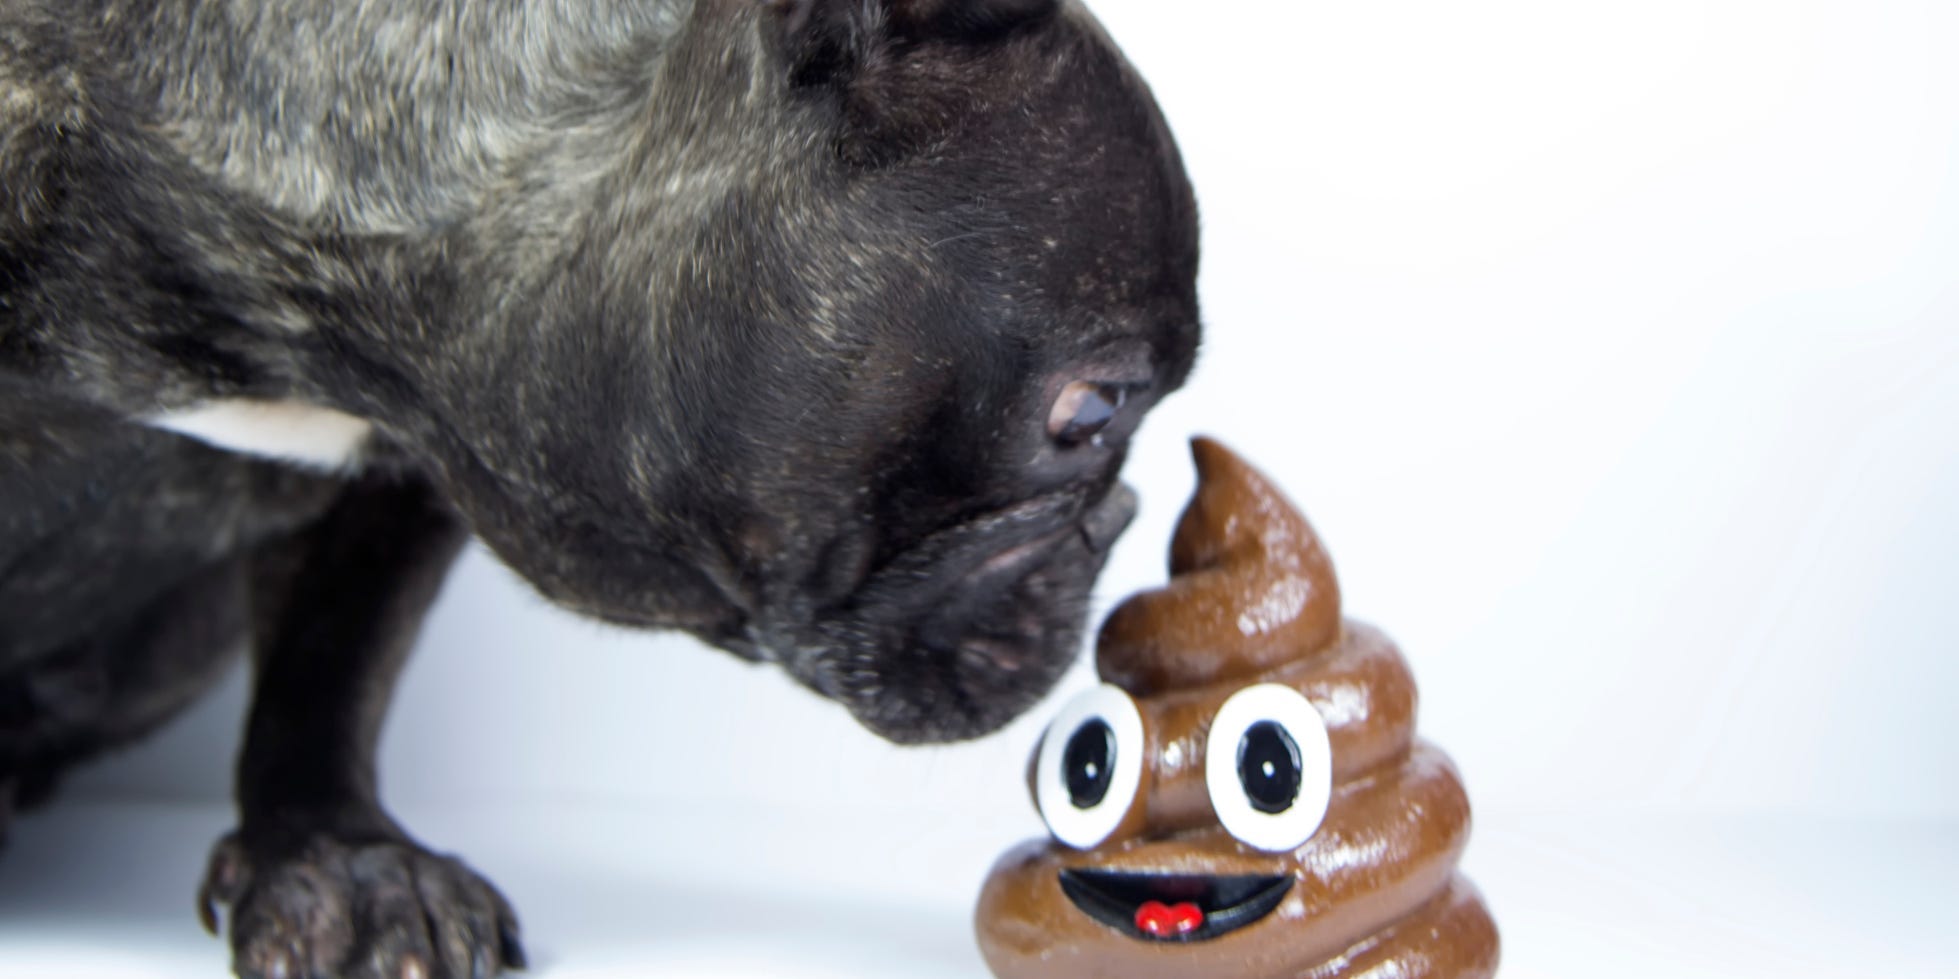 dogs eat poop